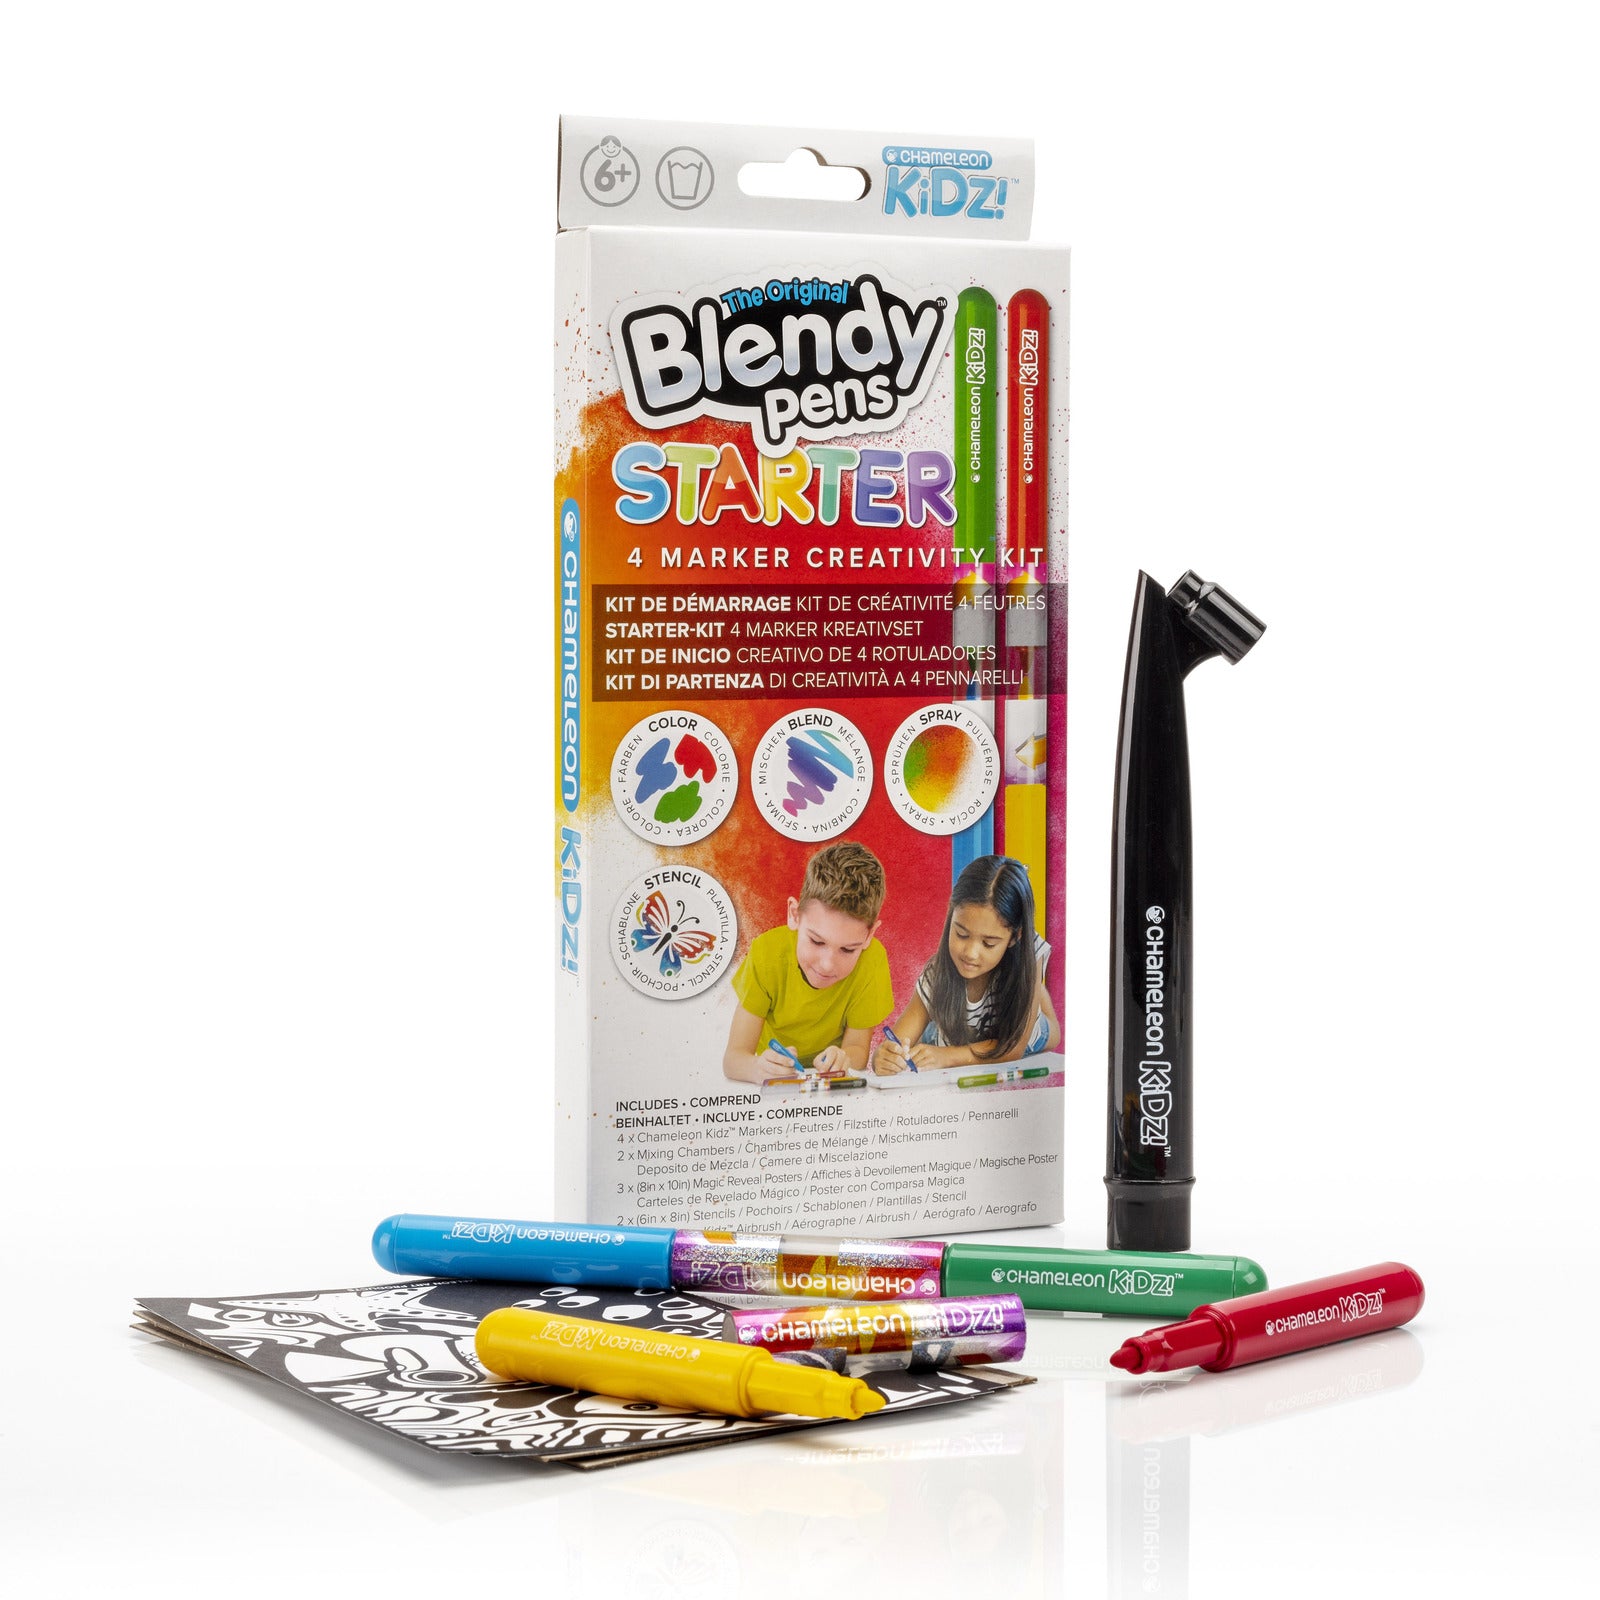 Blendy Pens 4 Marker Starter Creativity Kit